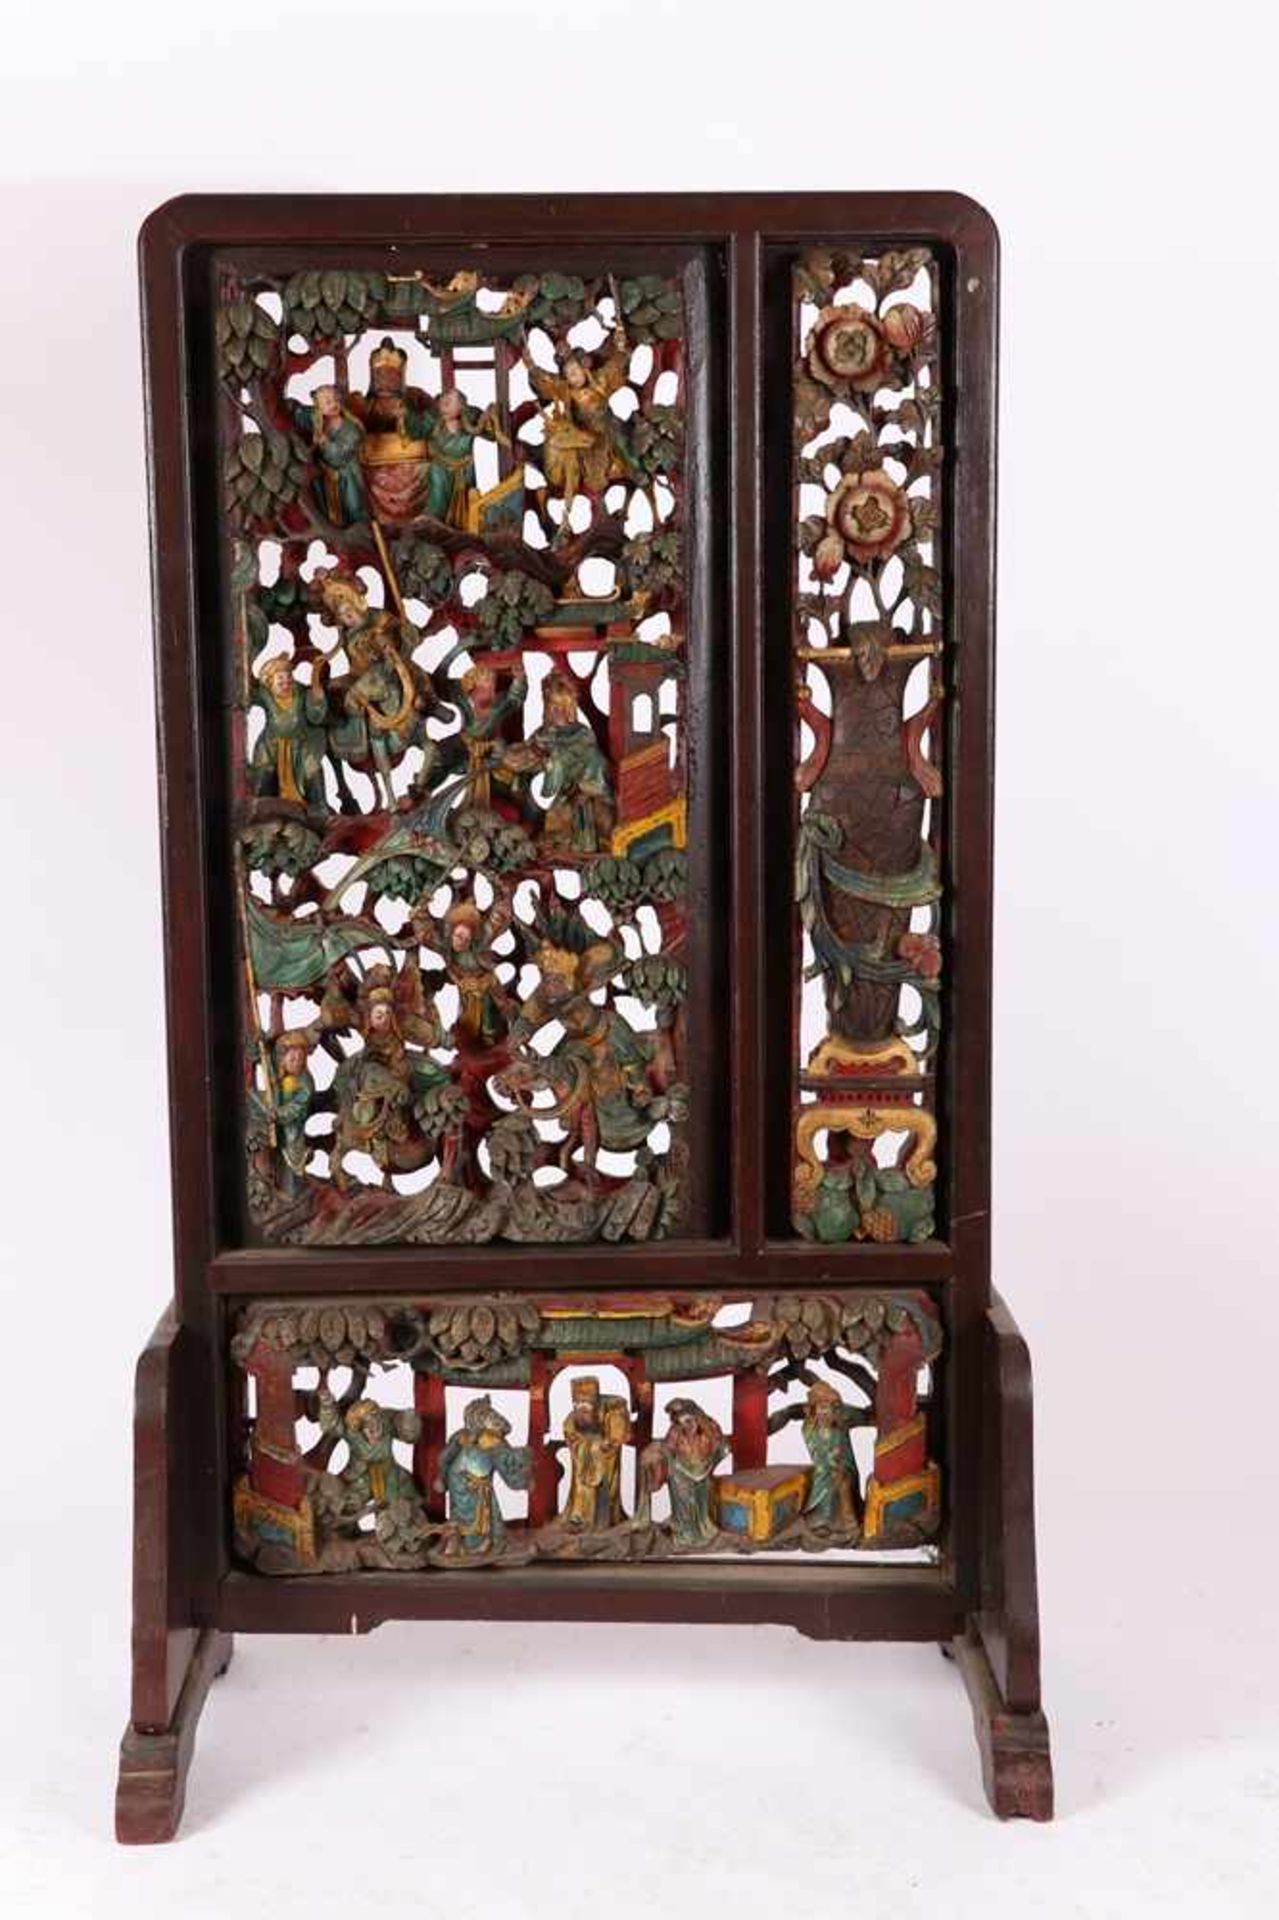 Stellschirm für Altartisch, China um 1900H.: 160 x 87 x 50 cm.